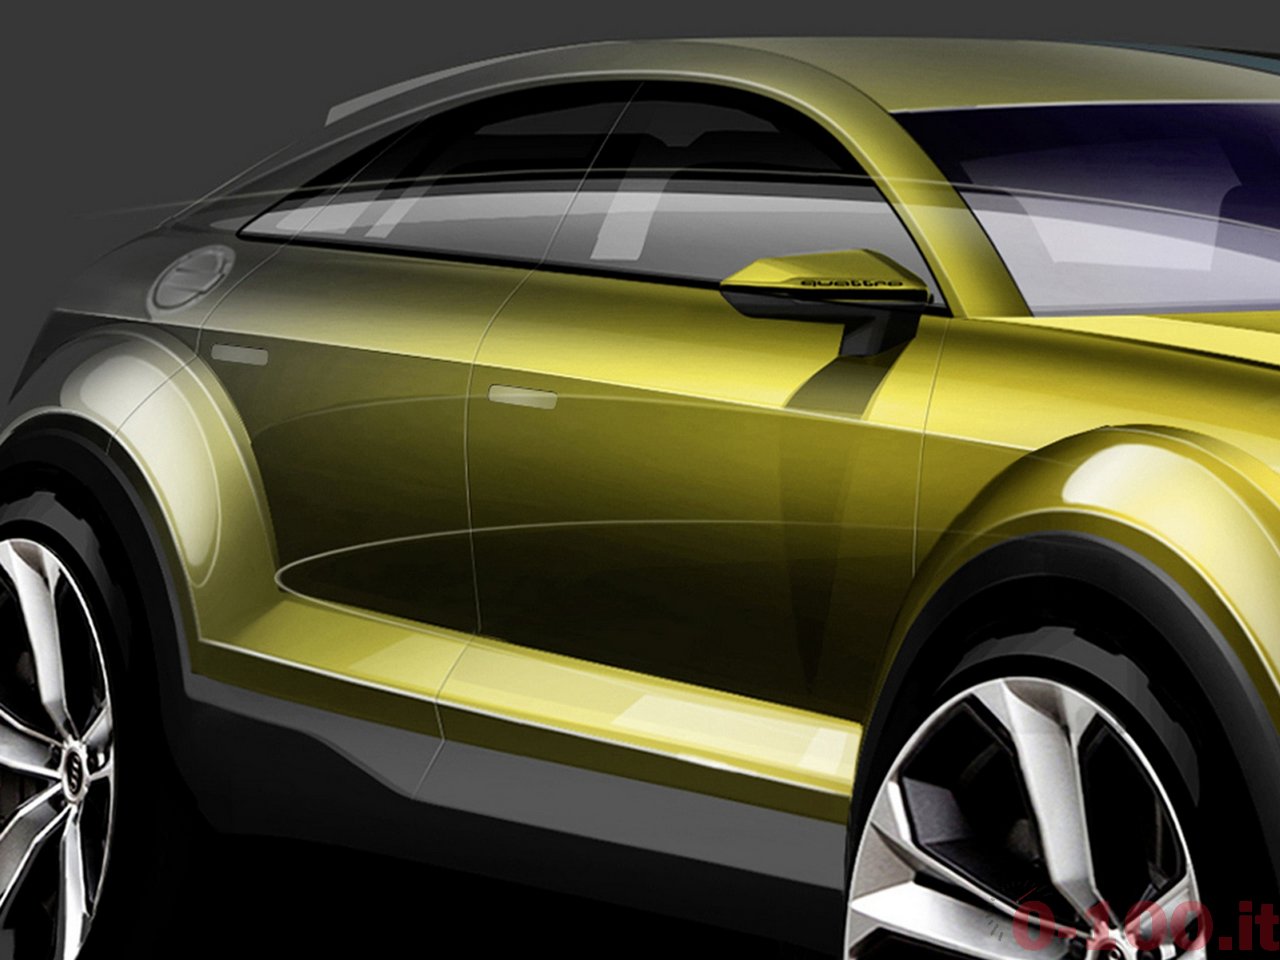 Audi praesentiert die Studie auf der Peking Motor Show 2014.